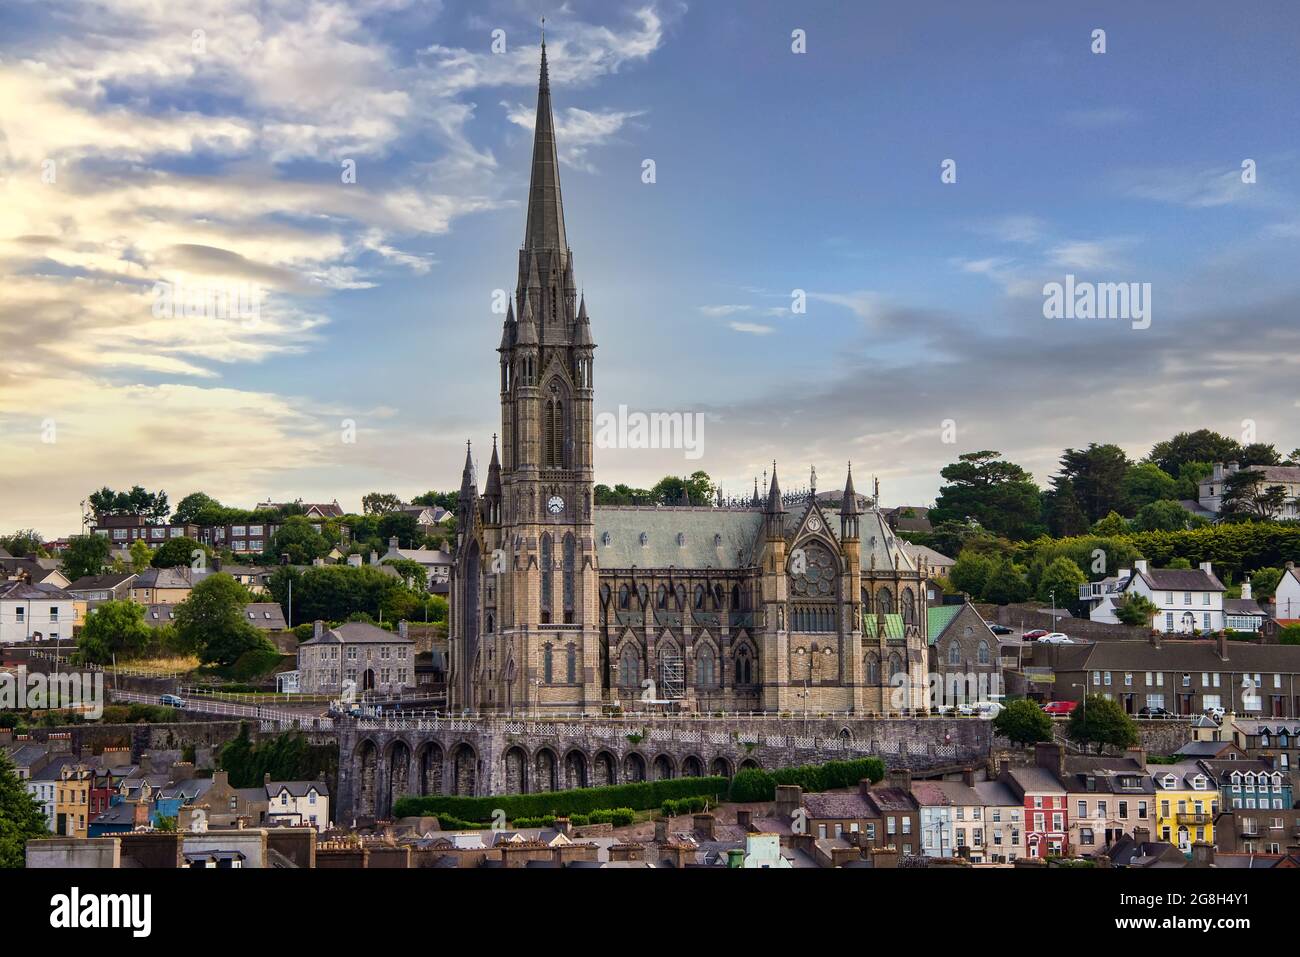 L'église de la cathédrale Saint-Colman, une cathédrale catholique romaine, occupe une position importante dans le port de Cobh, en Irlande. Banque D'Images